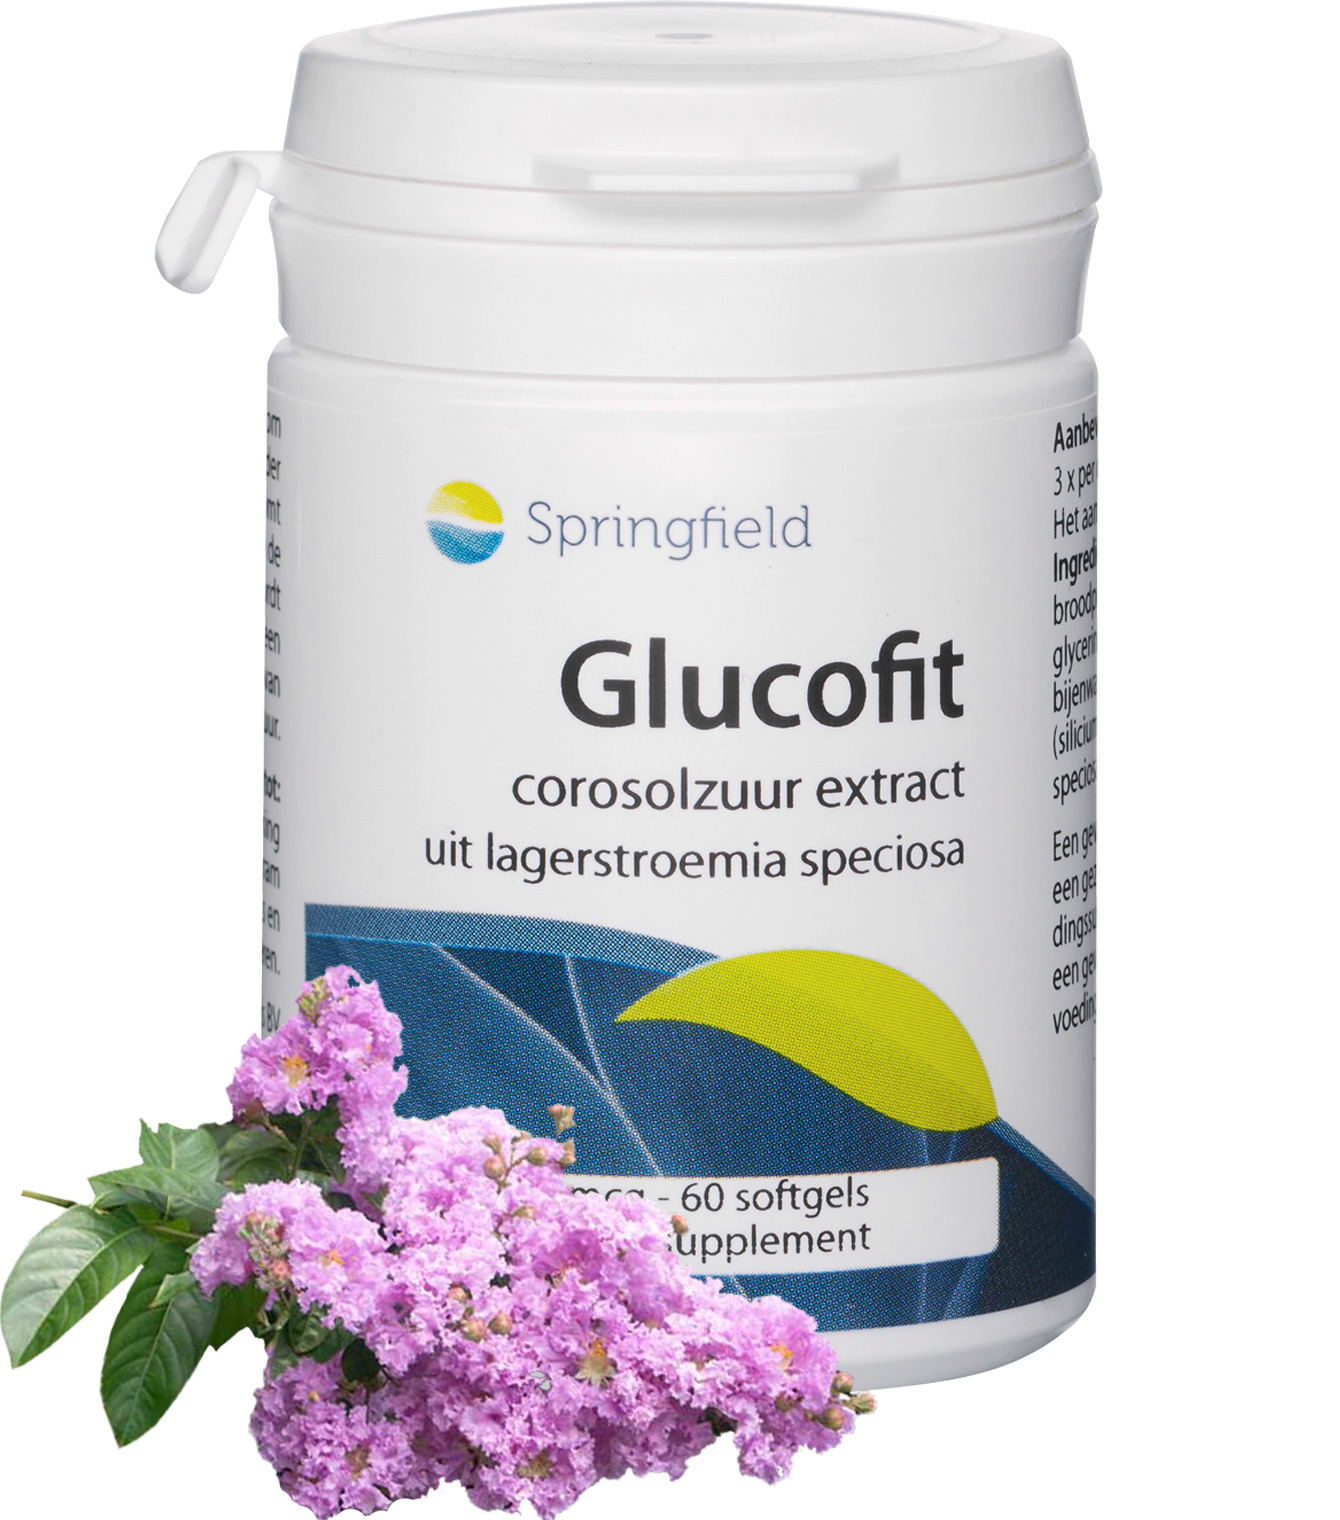 Glucofit Lagerstroemia speciosa-extract met corosolzuur (480 mcg) 